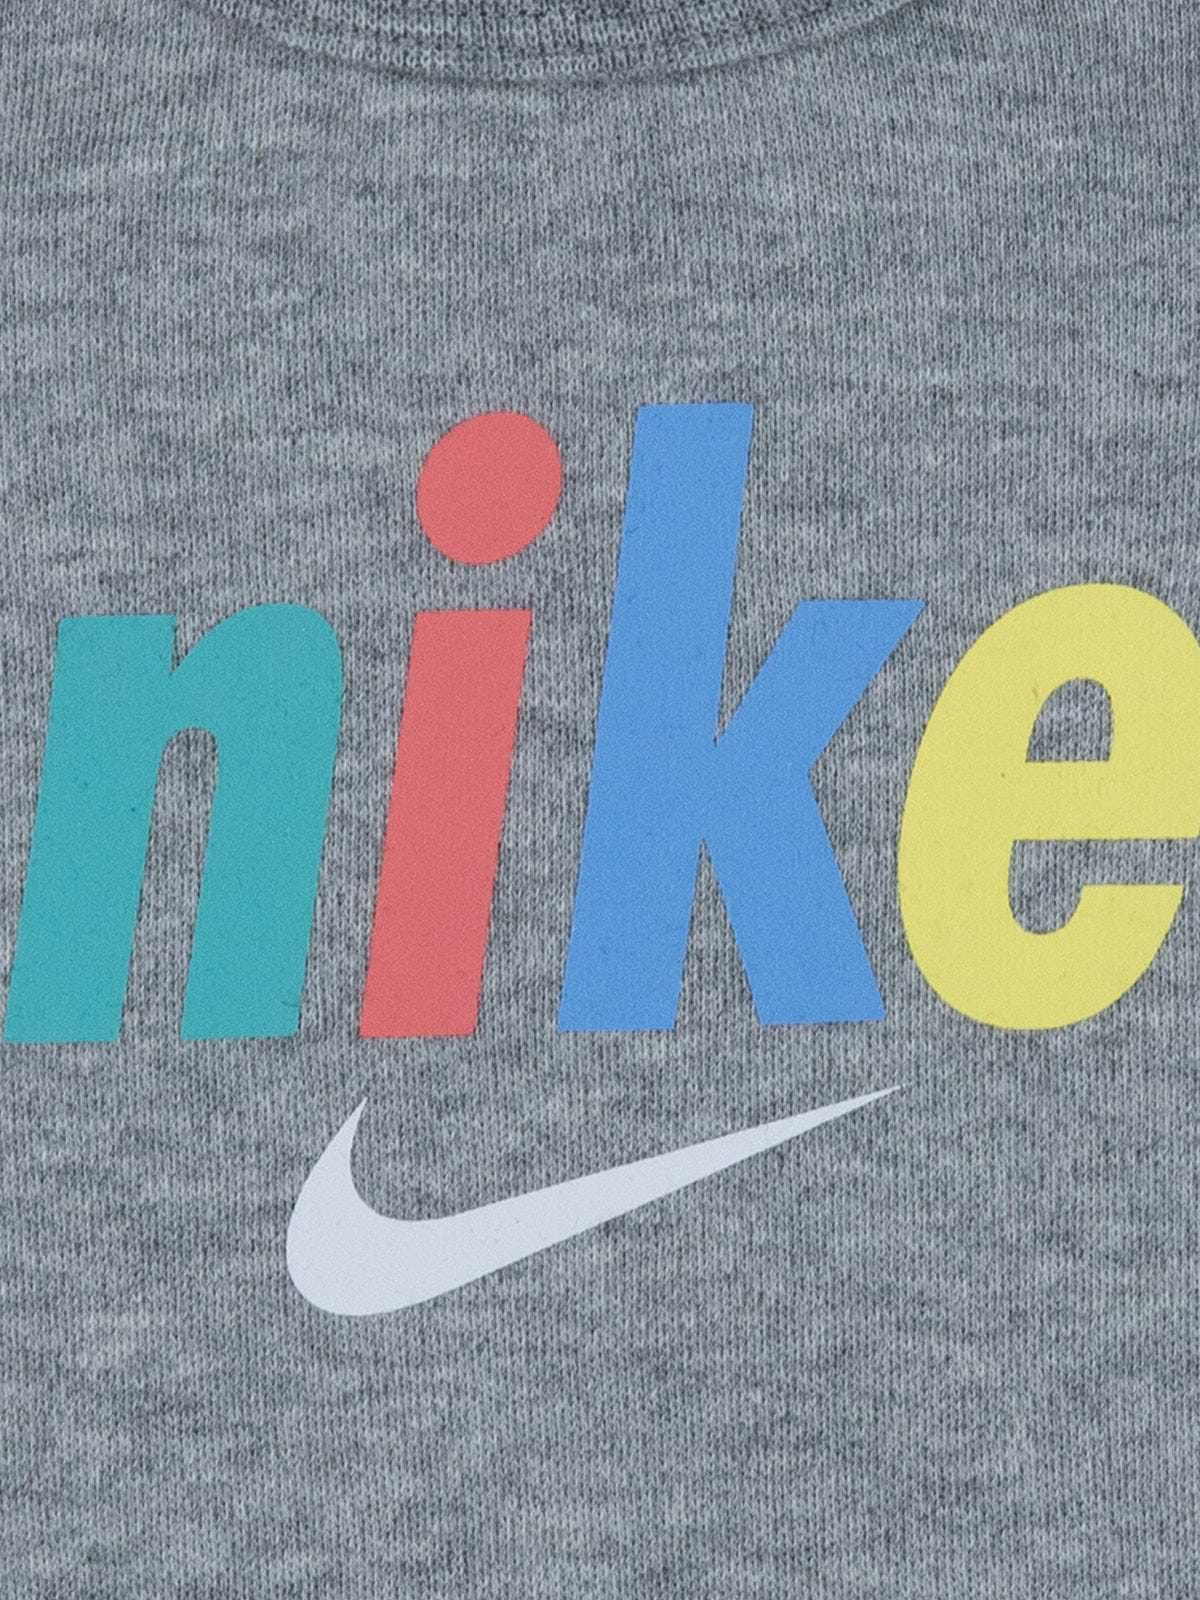 סט בגד גוף וטייץ עם לוגו צבעוני / תינוקות- Nike|נייק